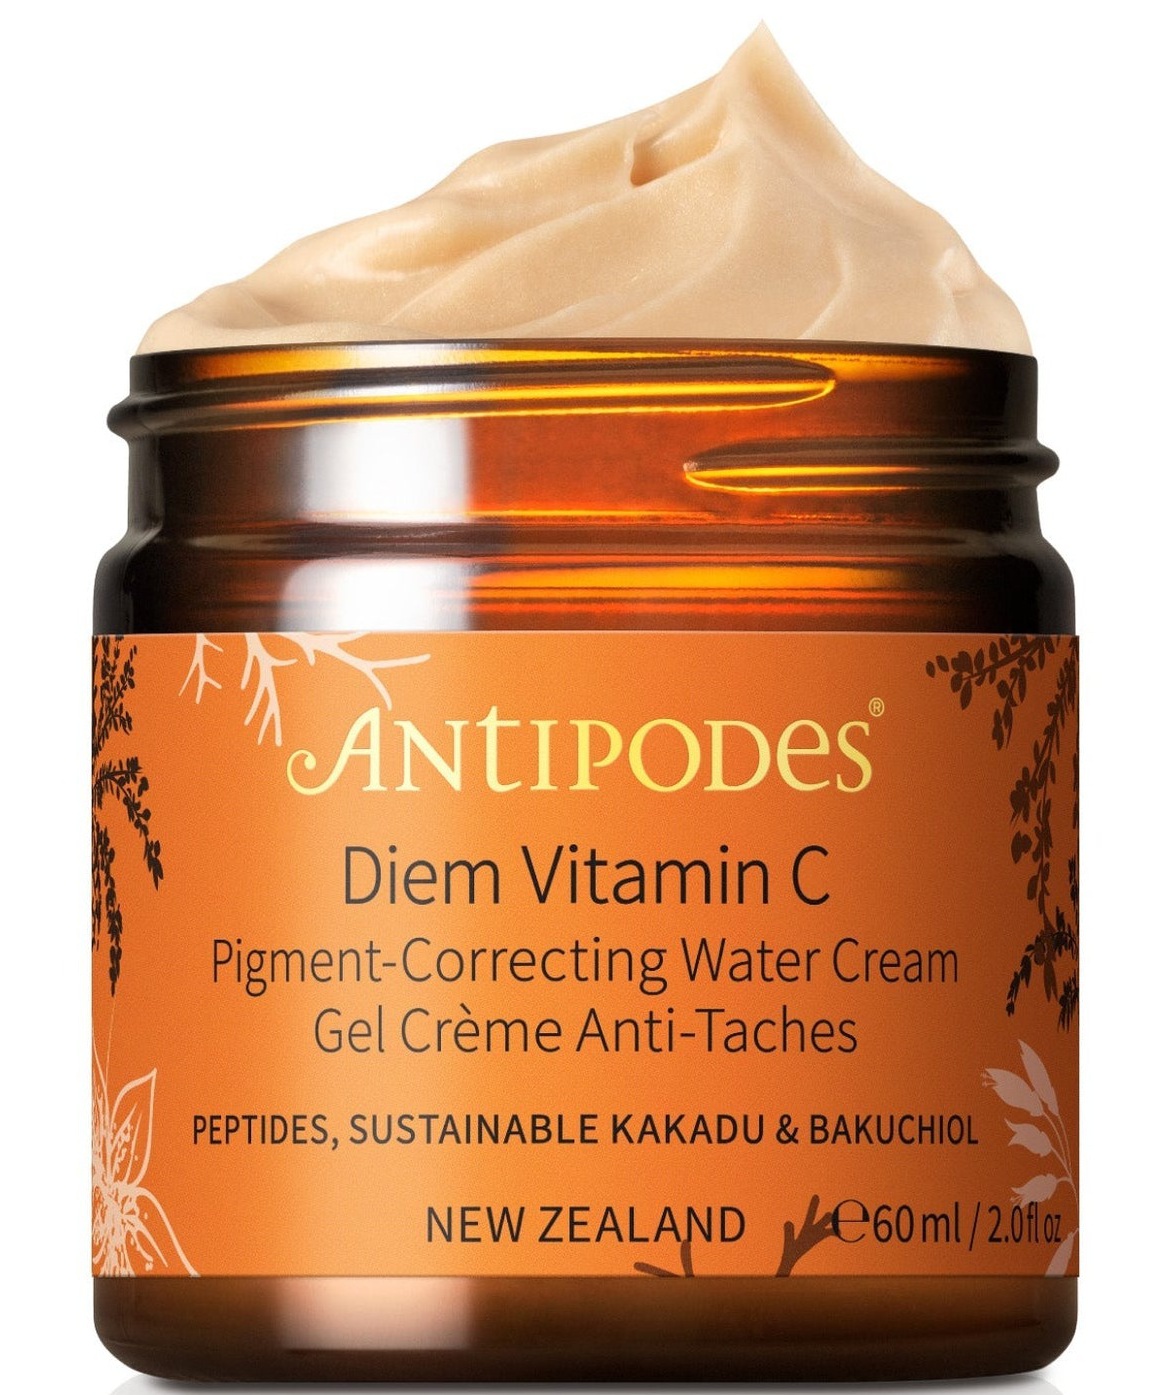 Antipodes Diem Vitamin C Pigment-correcting Water Cream